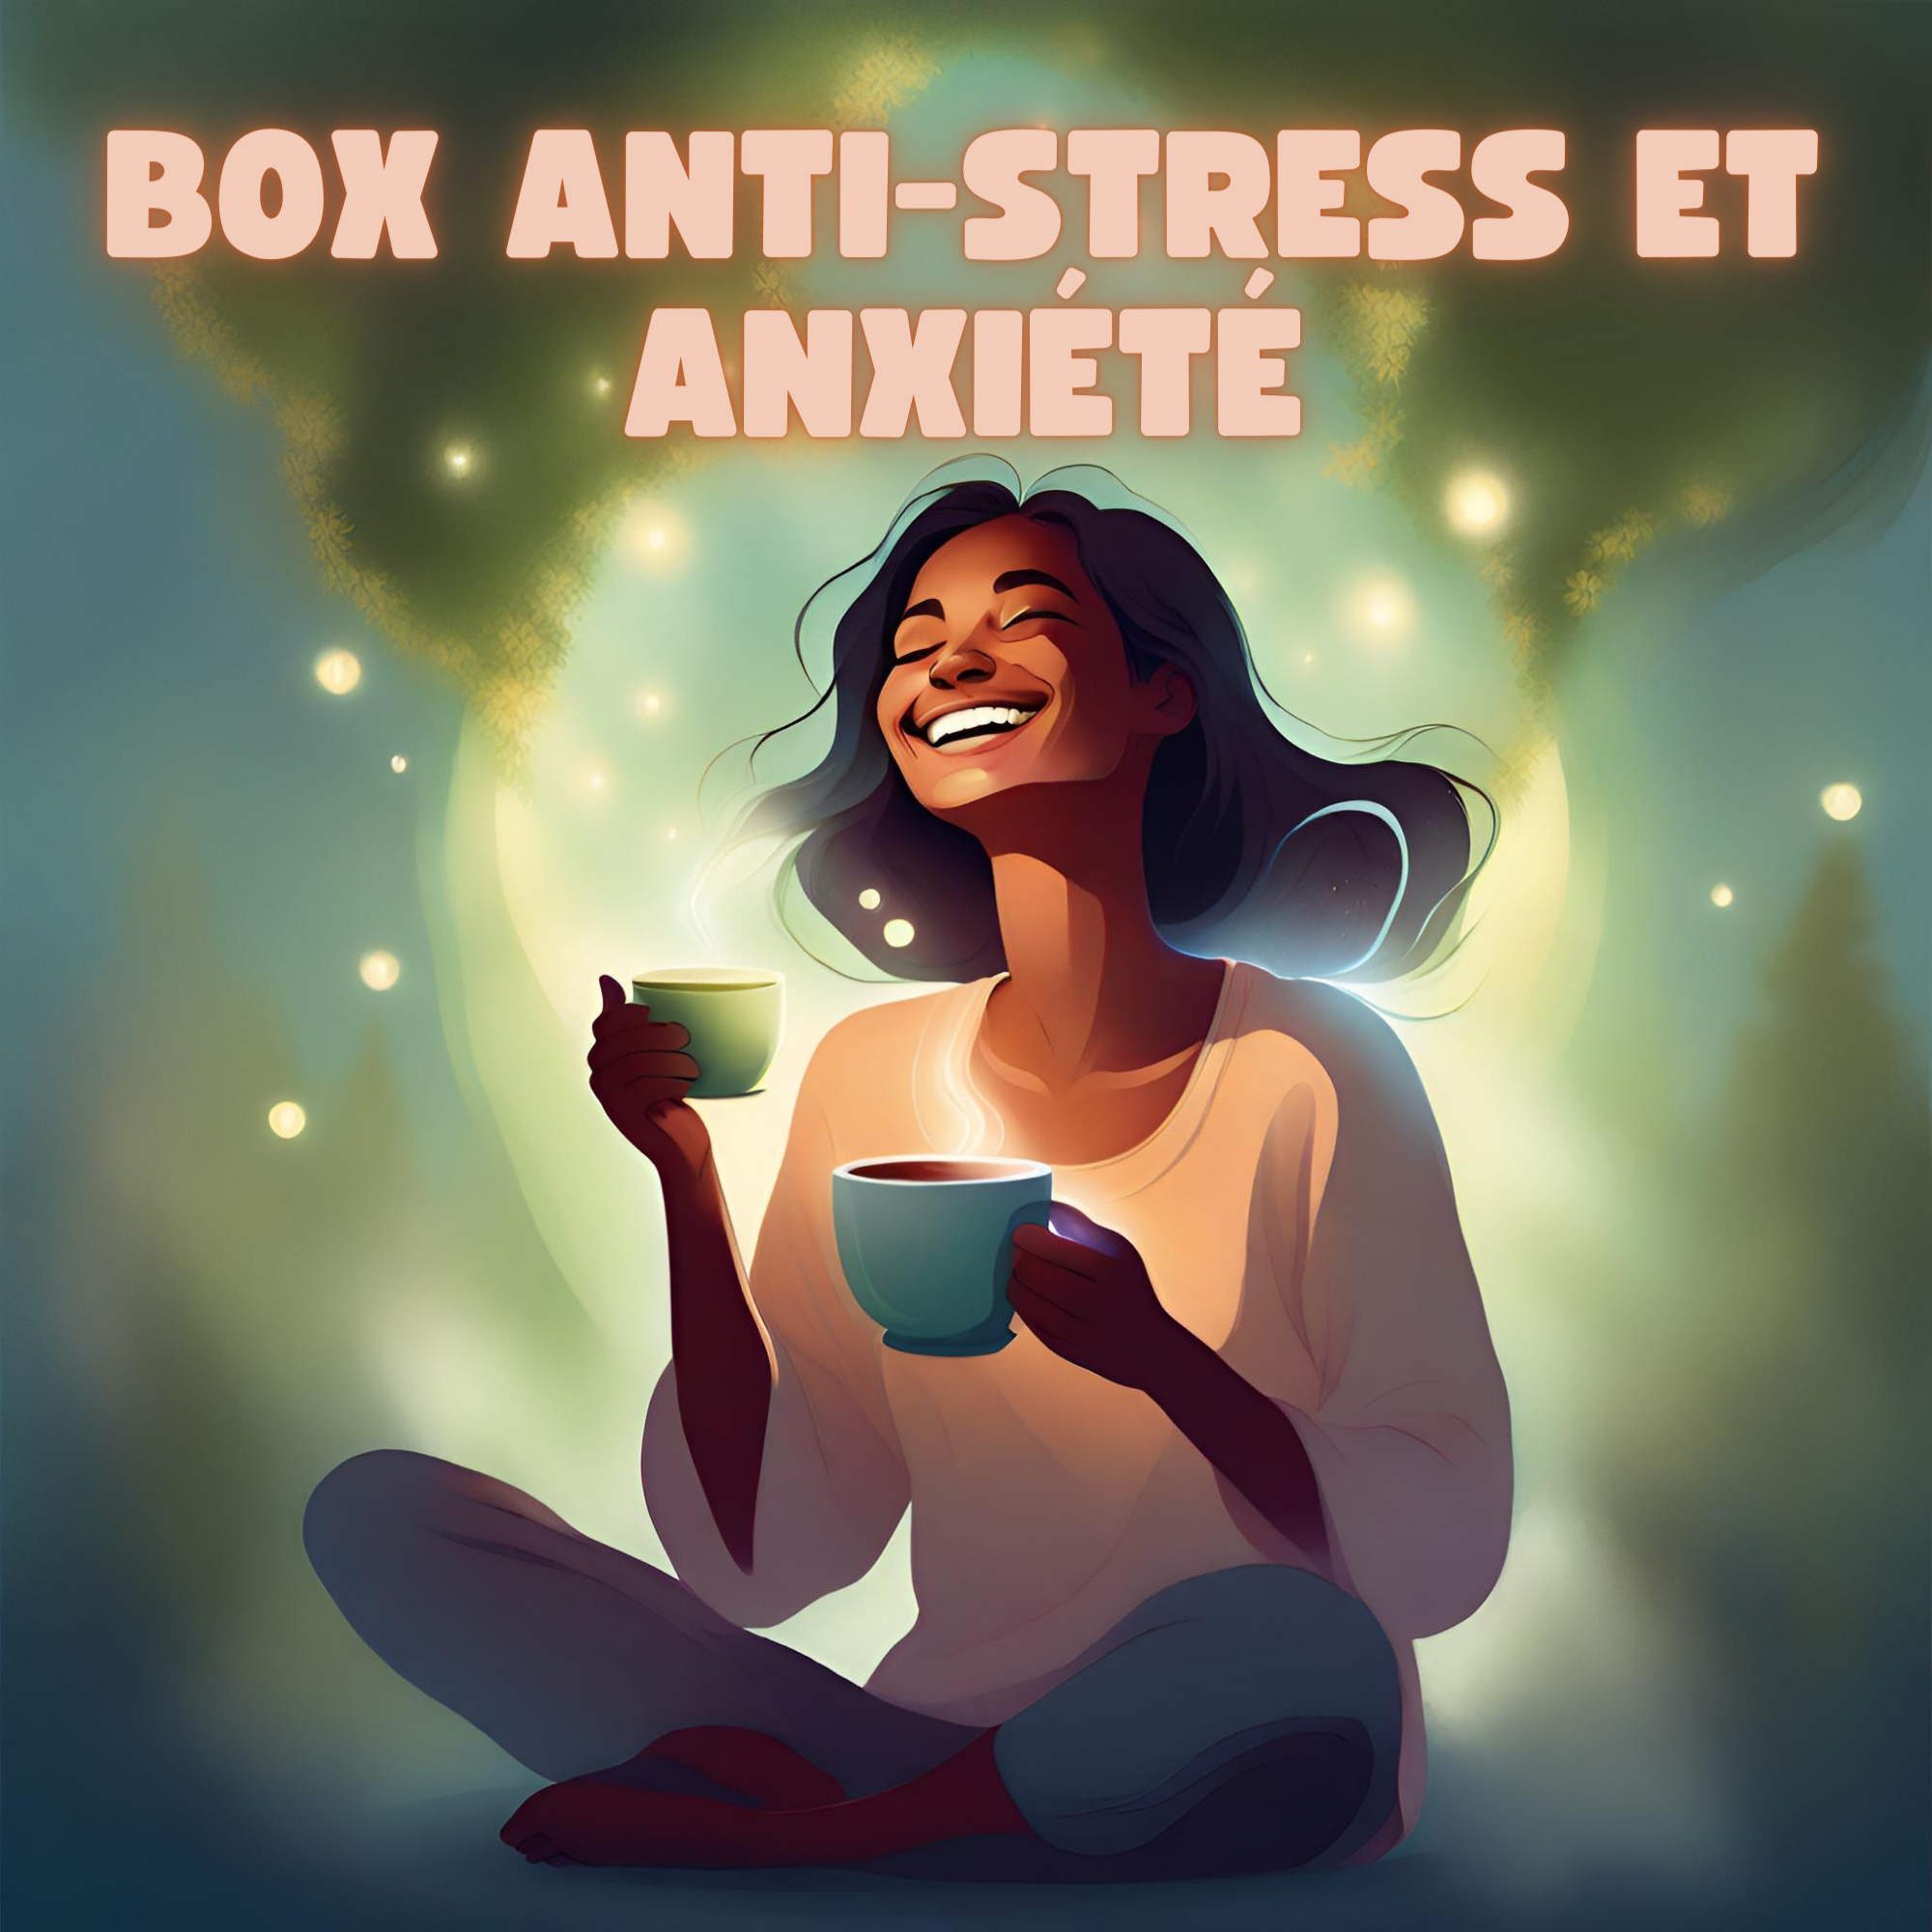 Box anti-stress et anxiété